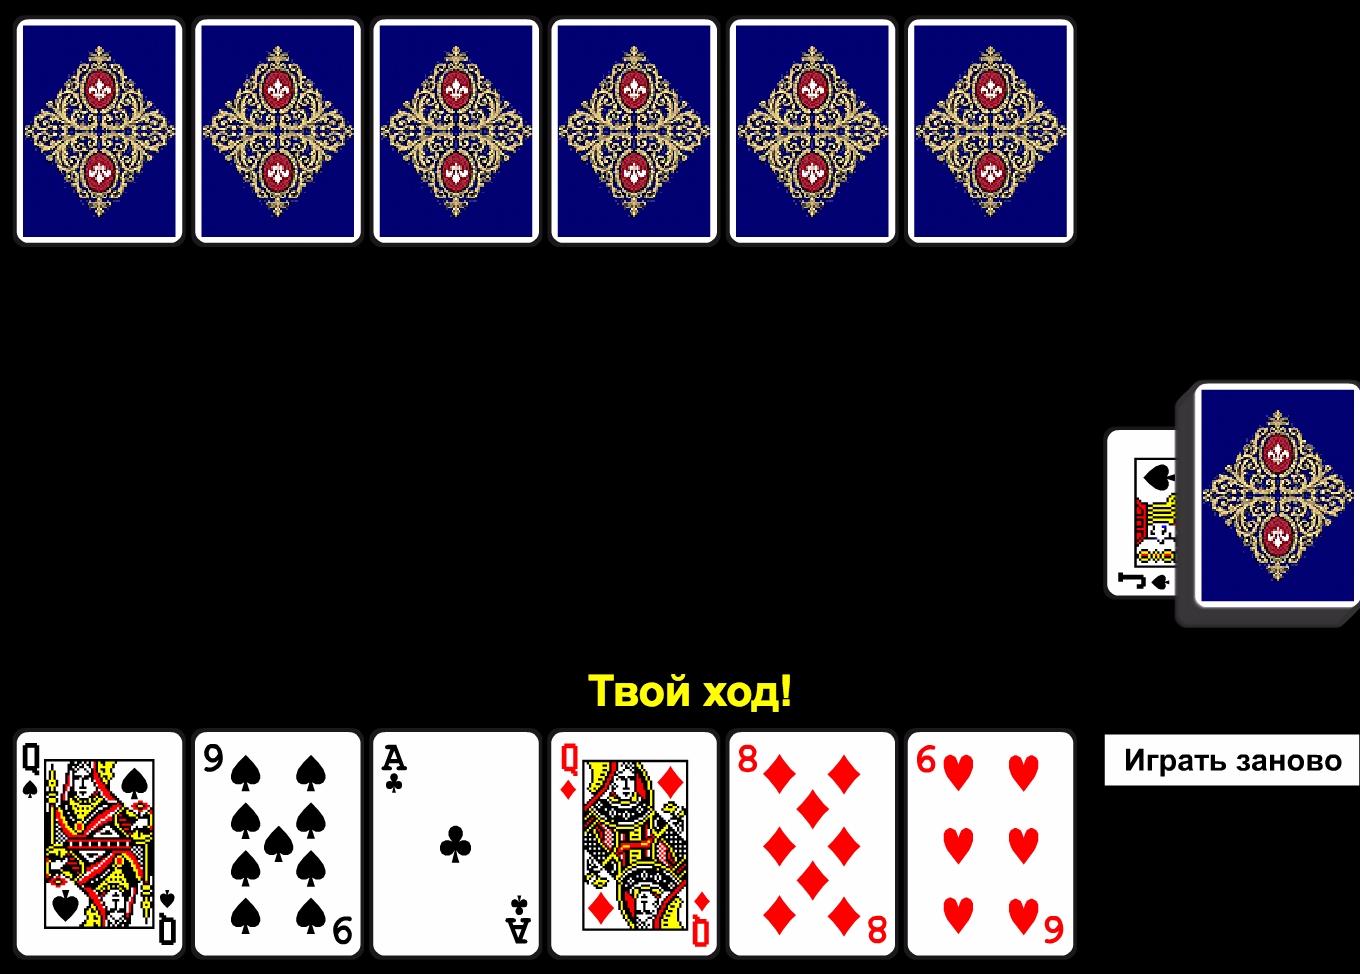 Игра карты дурака проста